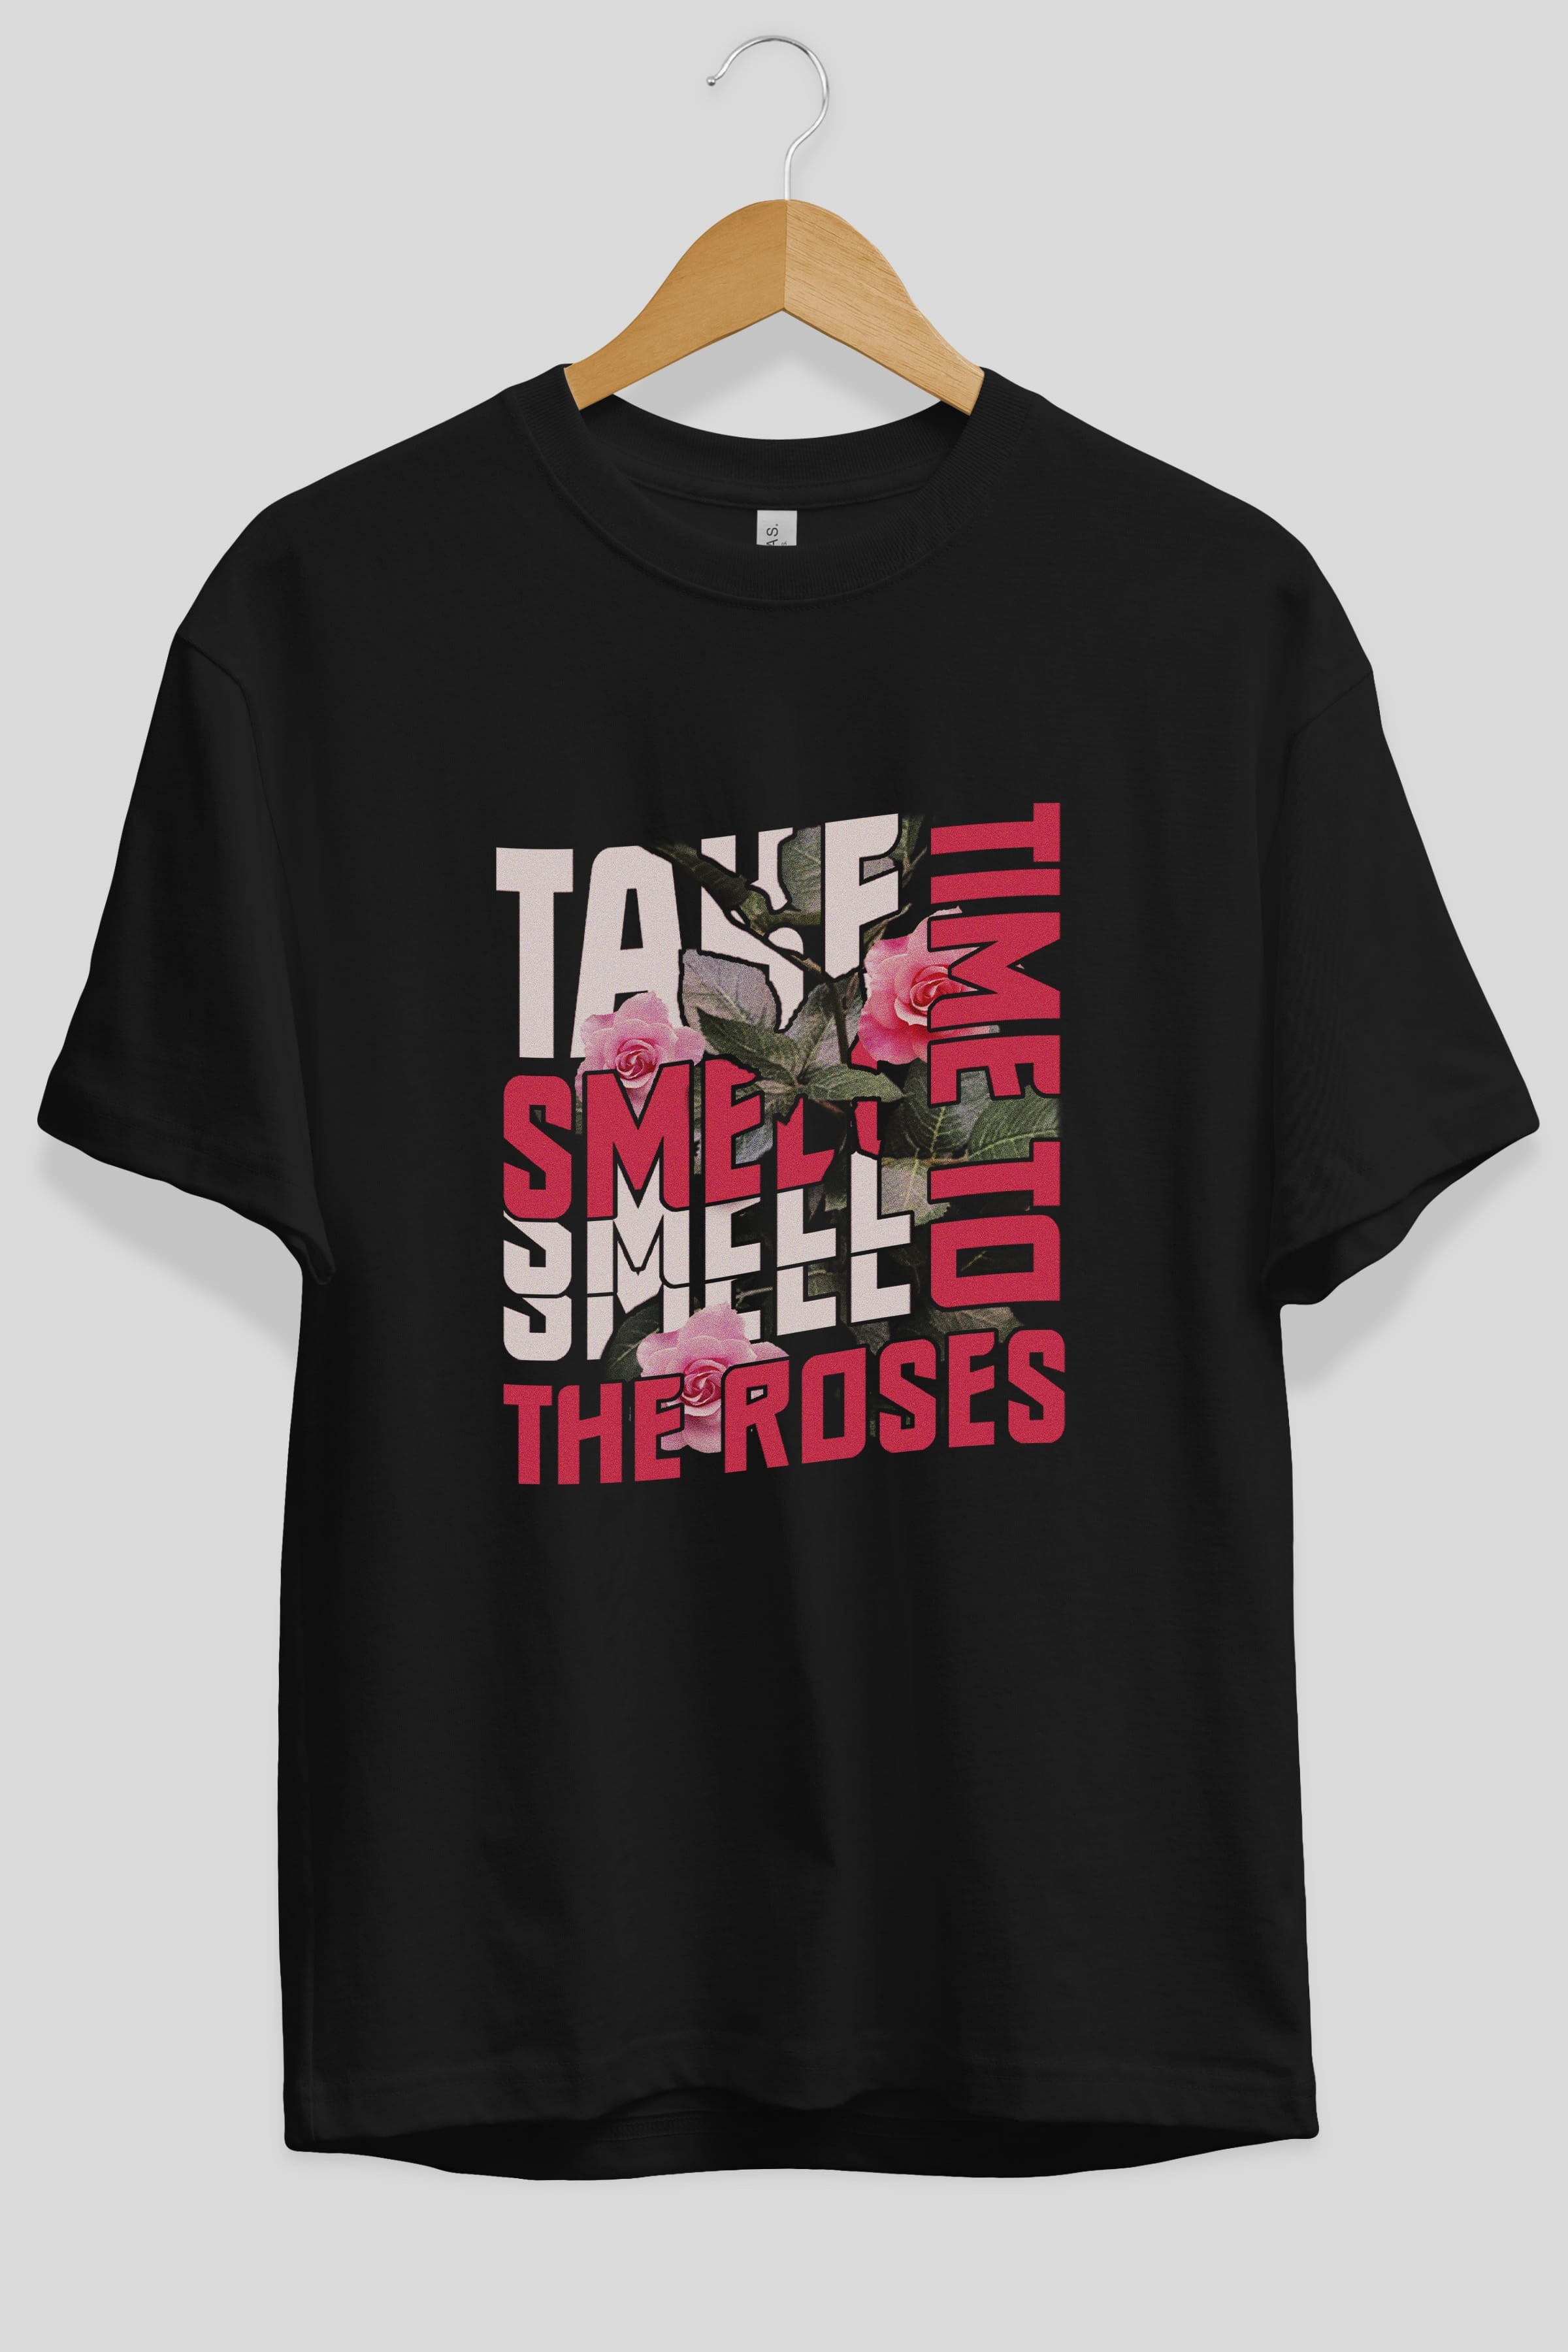 Take time to smell the roses Ön Baskılı Oversize t-shirt Erkek Kadın Unisex